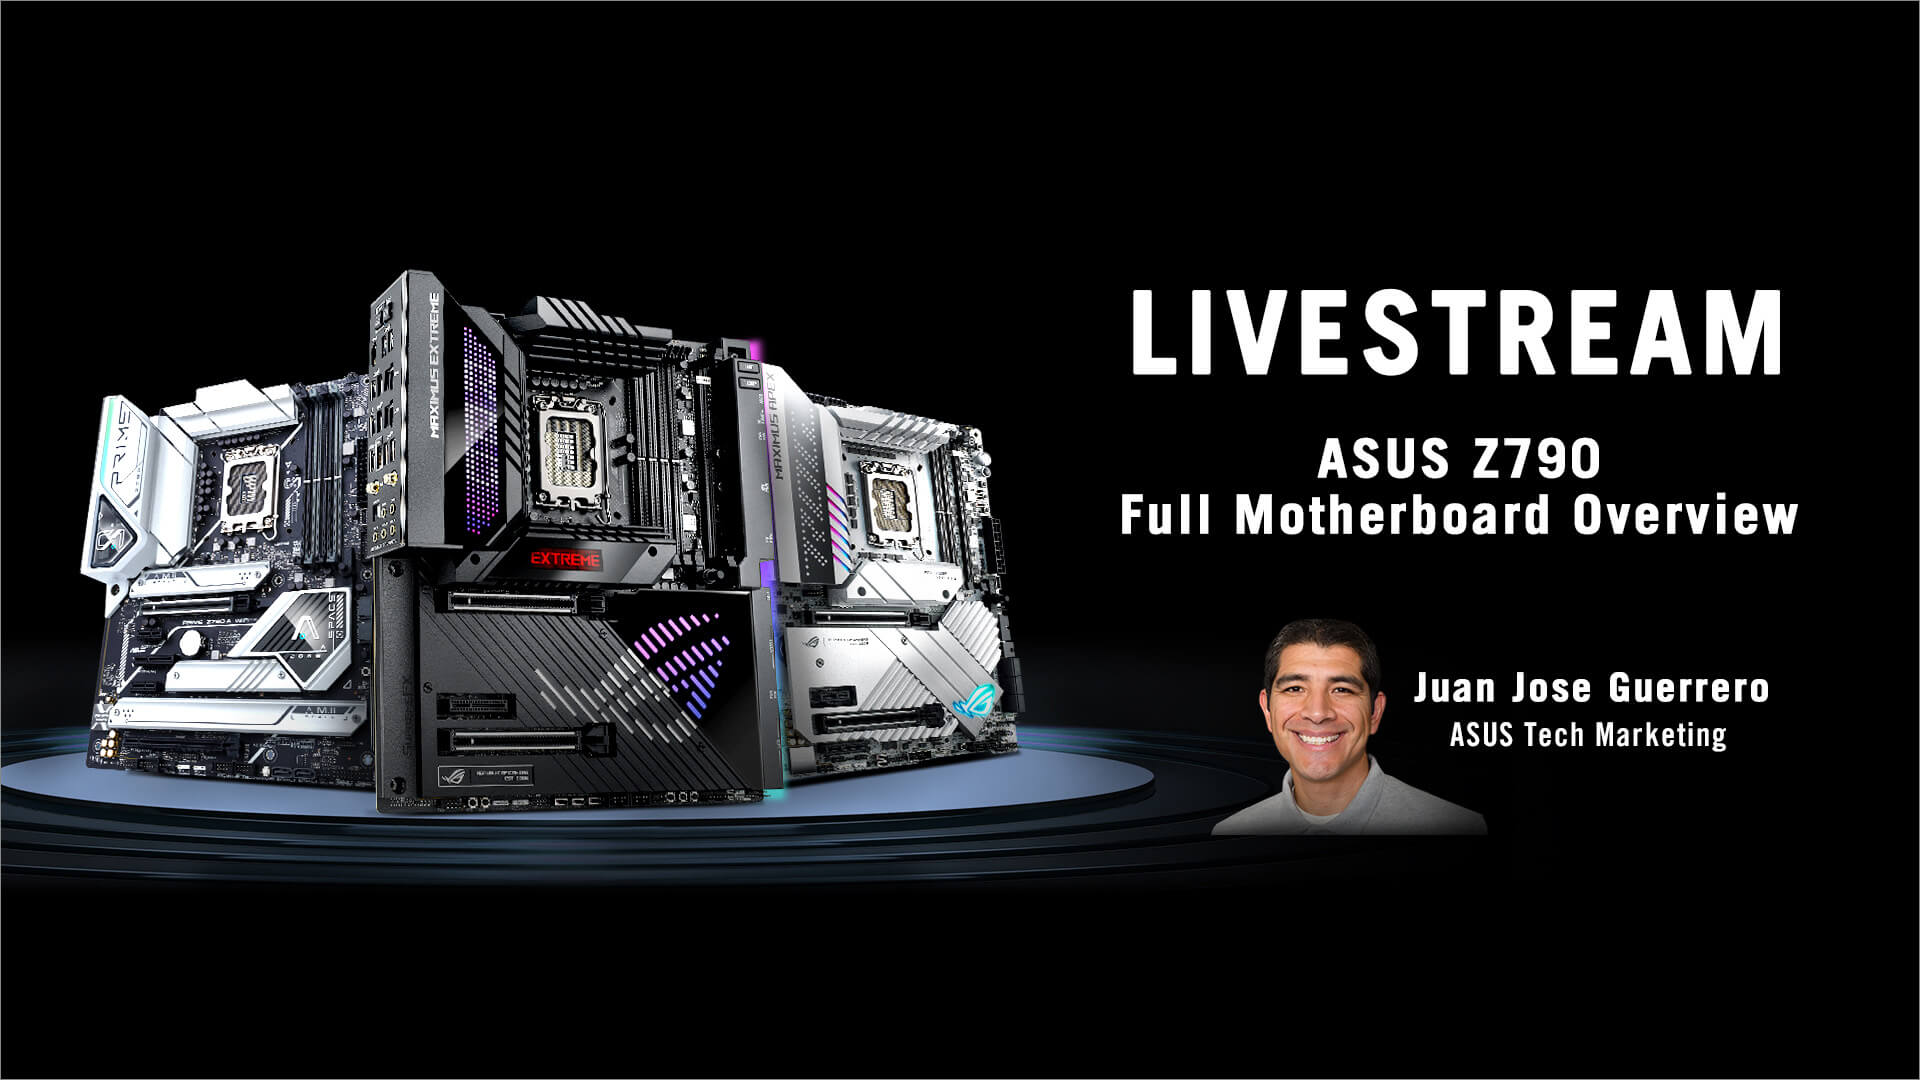 Bild mit Livestream-Infos und dem Porträt von ASUS Technical Marketing Juan Jose Guerrero